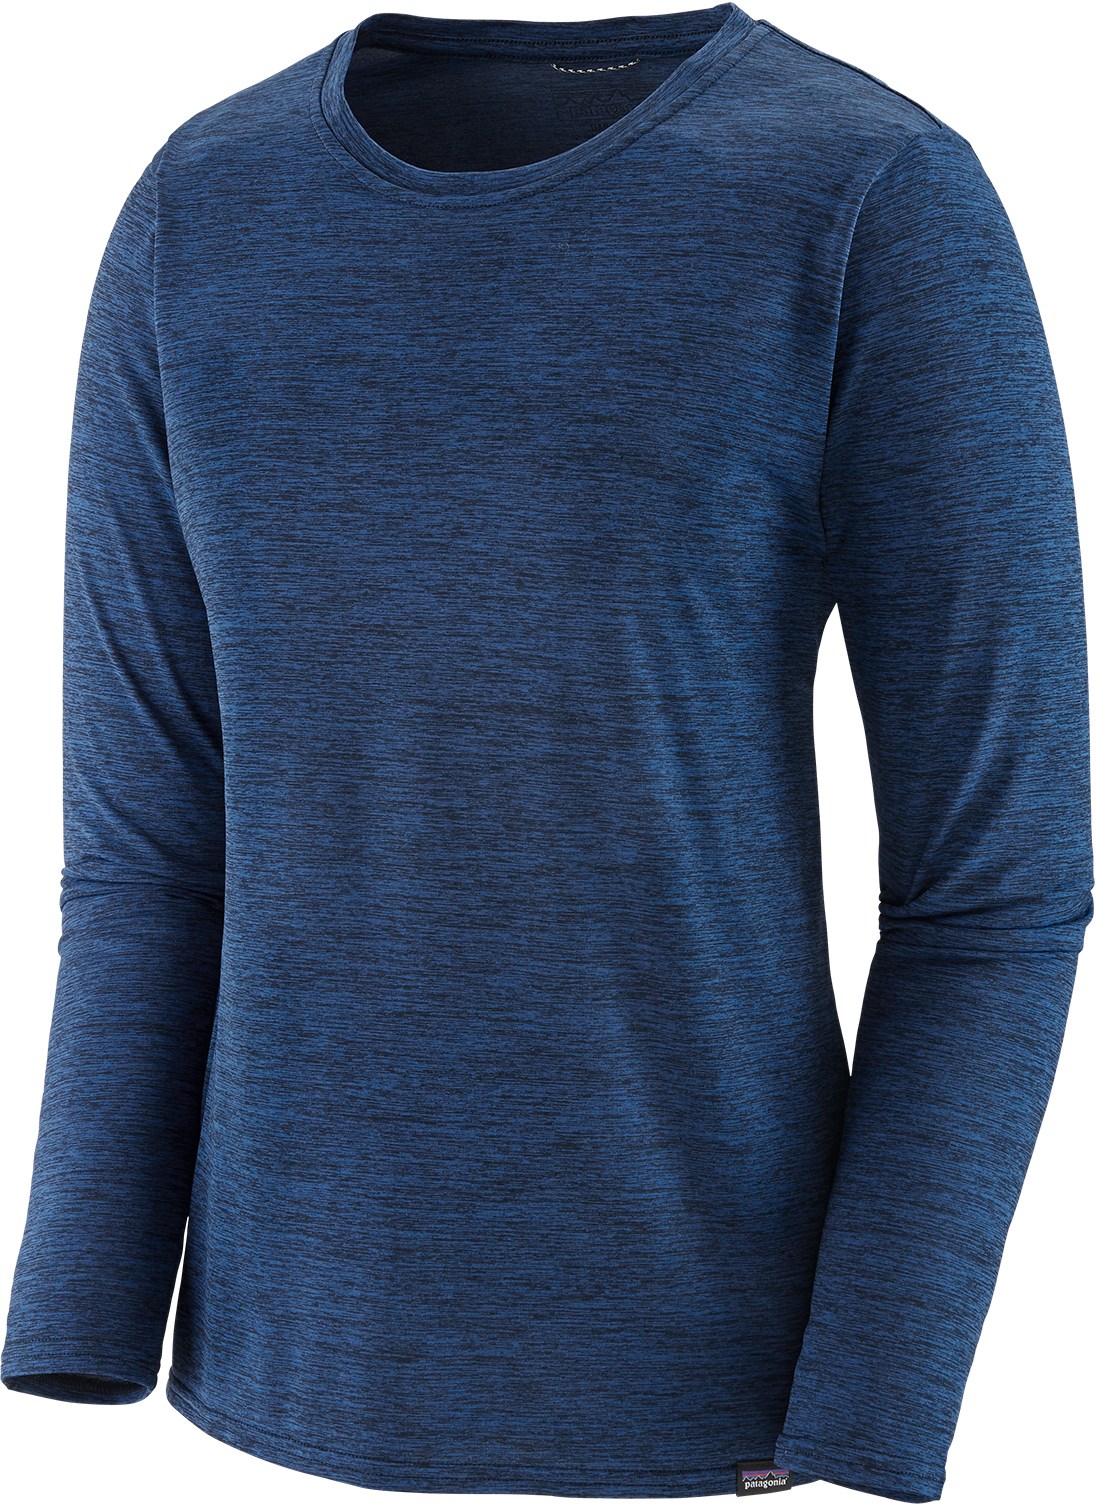 Повседневная рубашка Capilene Cool с длинными рукавами — женская Patagonia, синий повседневная рубашка с длинными рукавами capilene cool – мужская patagonia цвет feather grey